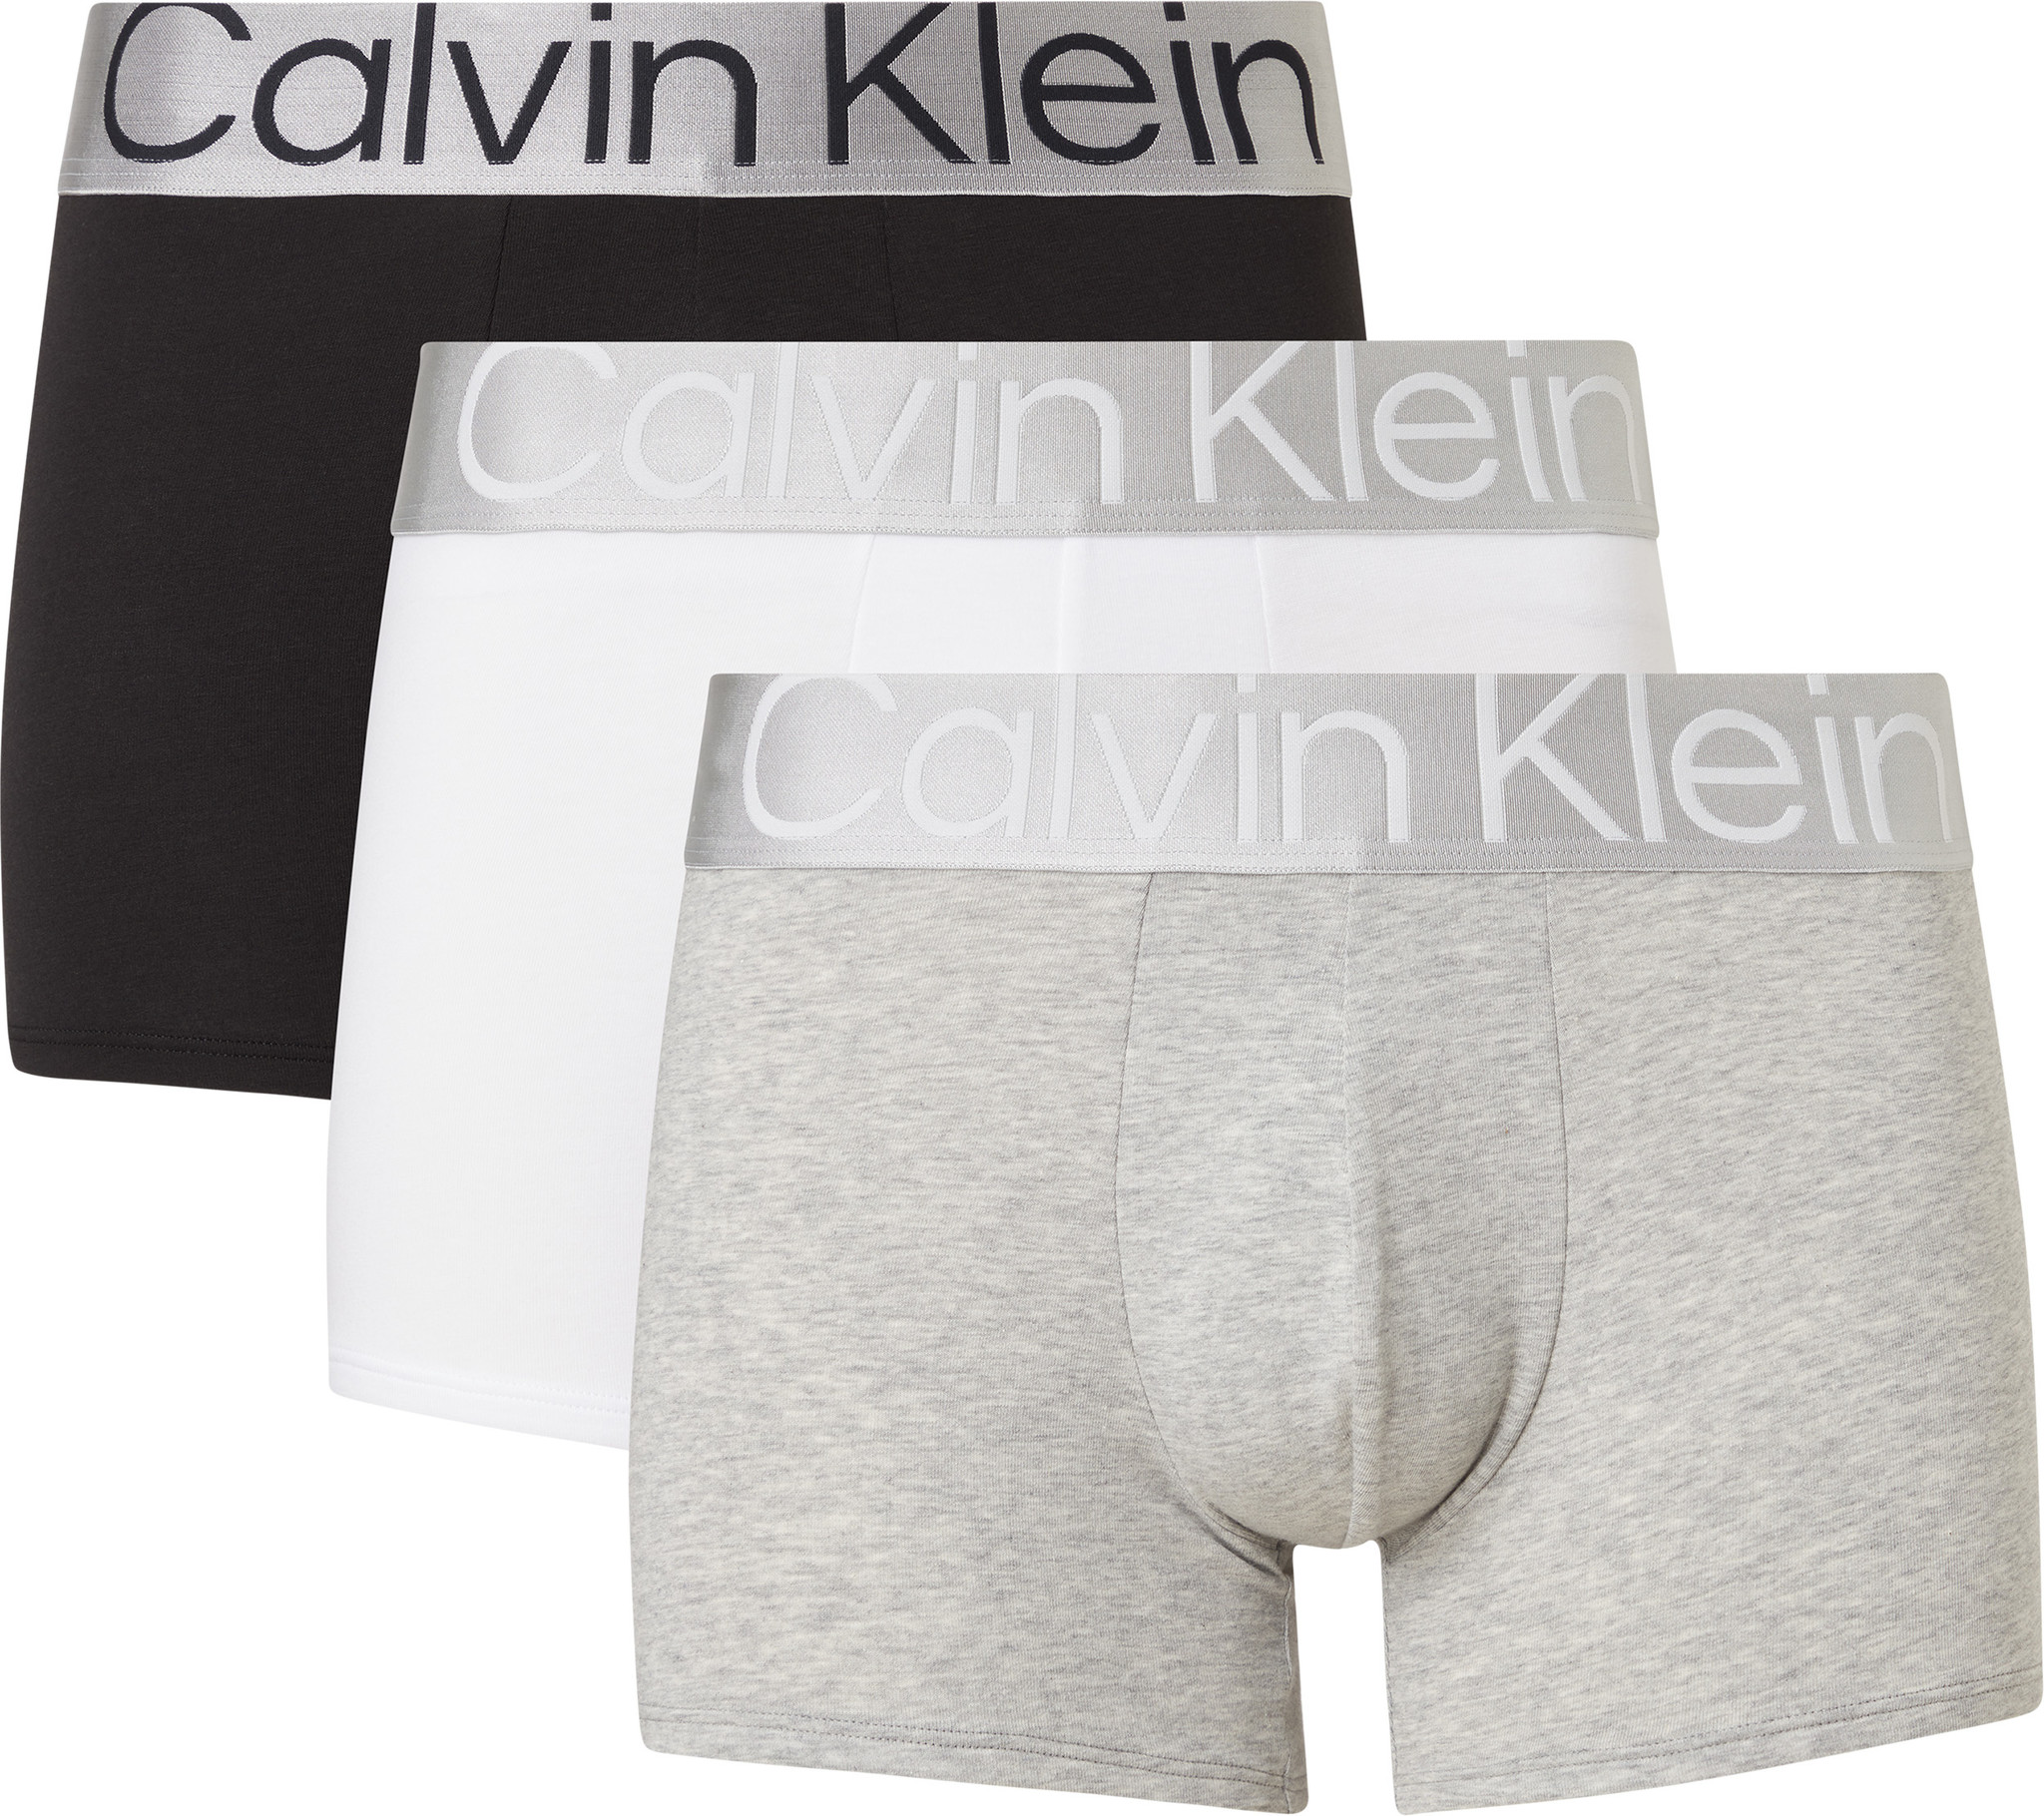 Calvin Klein boxershorts grijs Heren maat S